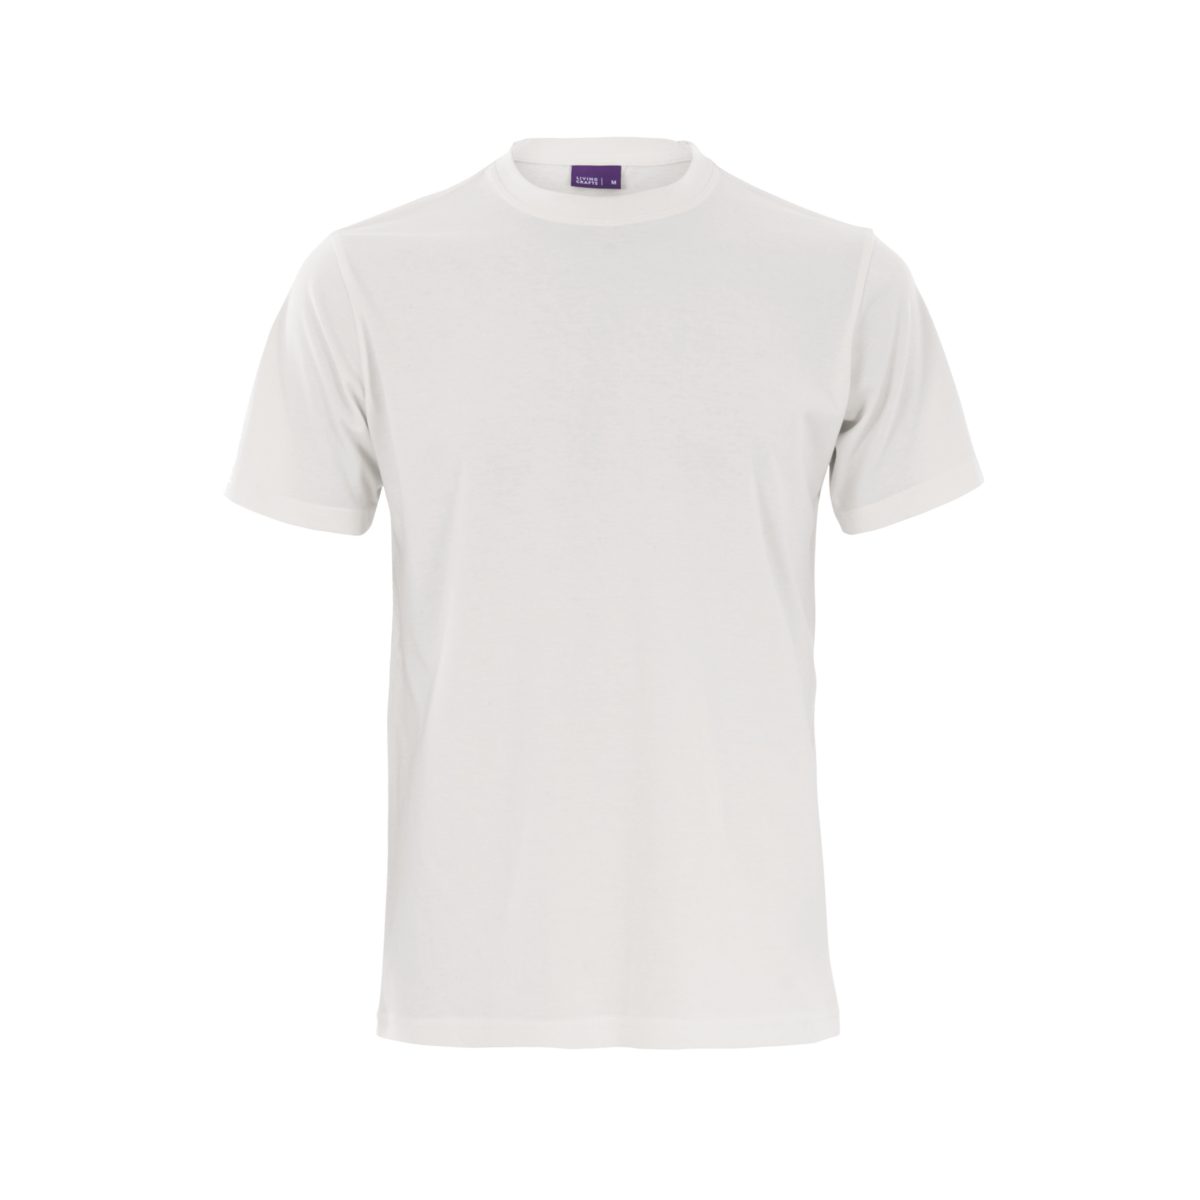 LIVING CRAFTS T-Shirt Single White Jersey CLARK Weiches, anschmiegsames